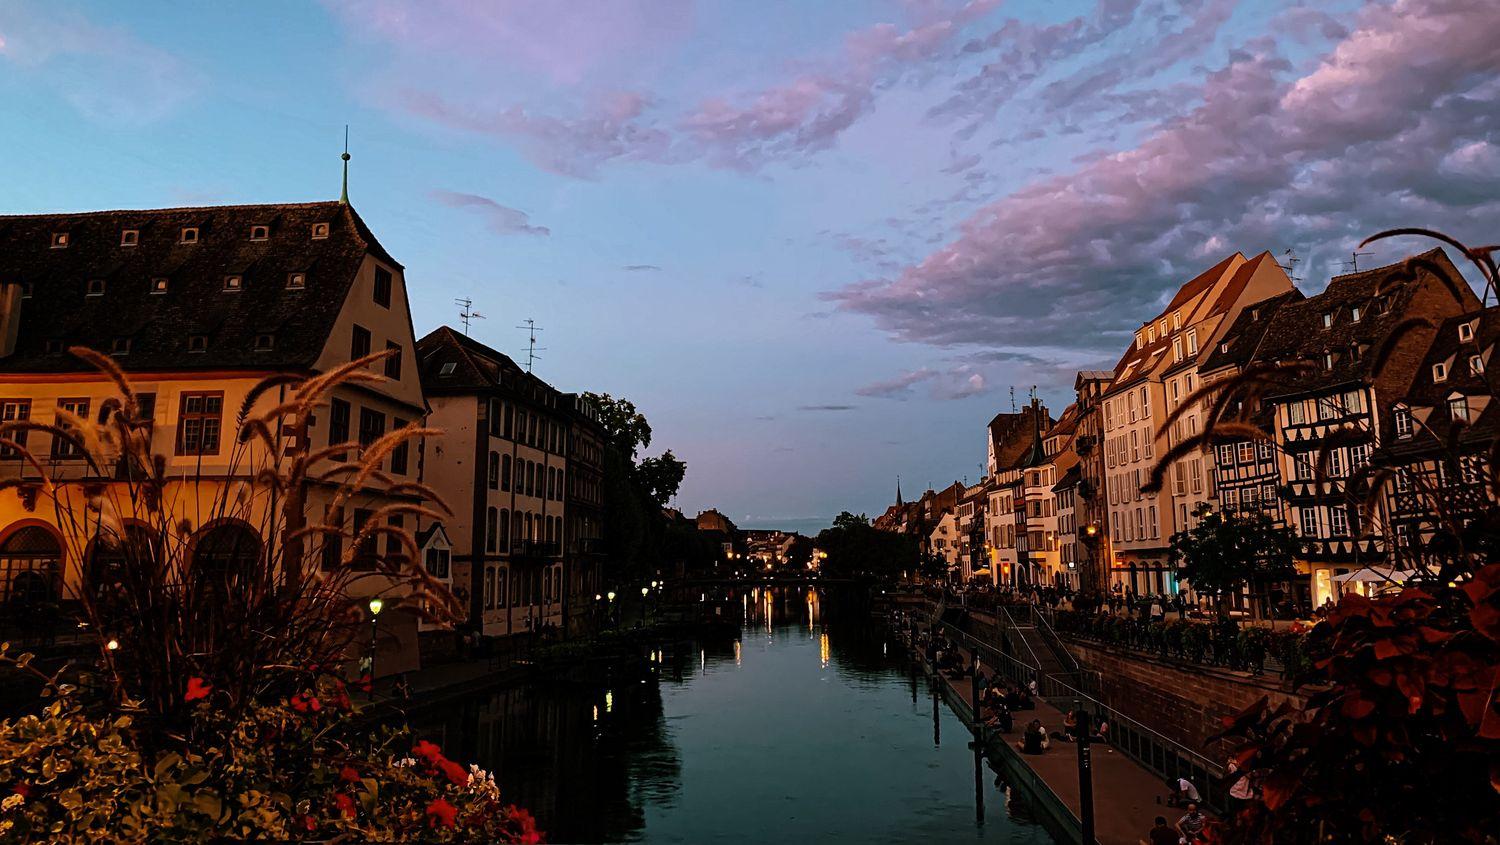 Blick vom Hausboot auf einen Kanal in Straßburg bei Abenddämmerung 